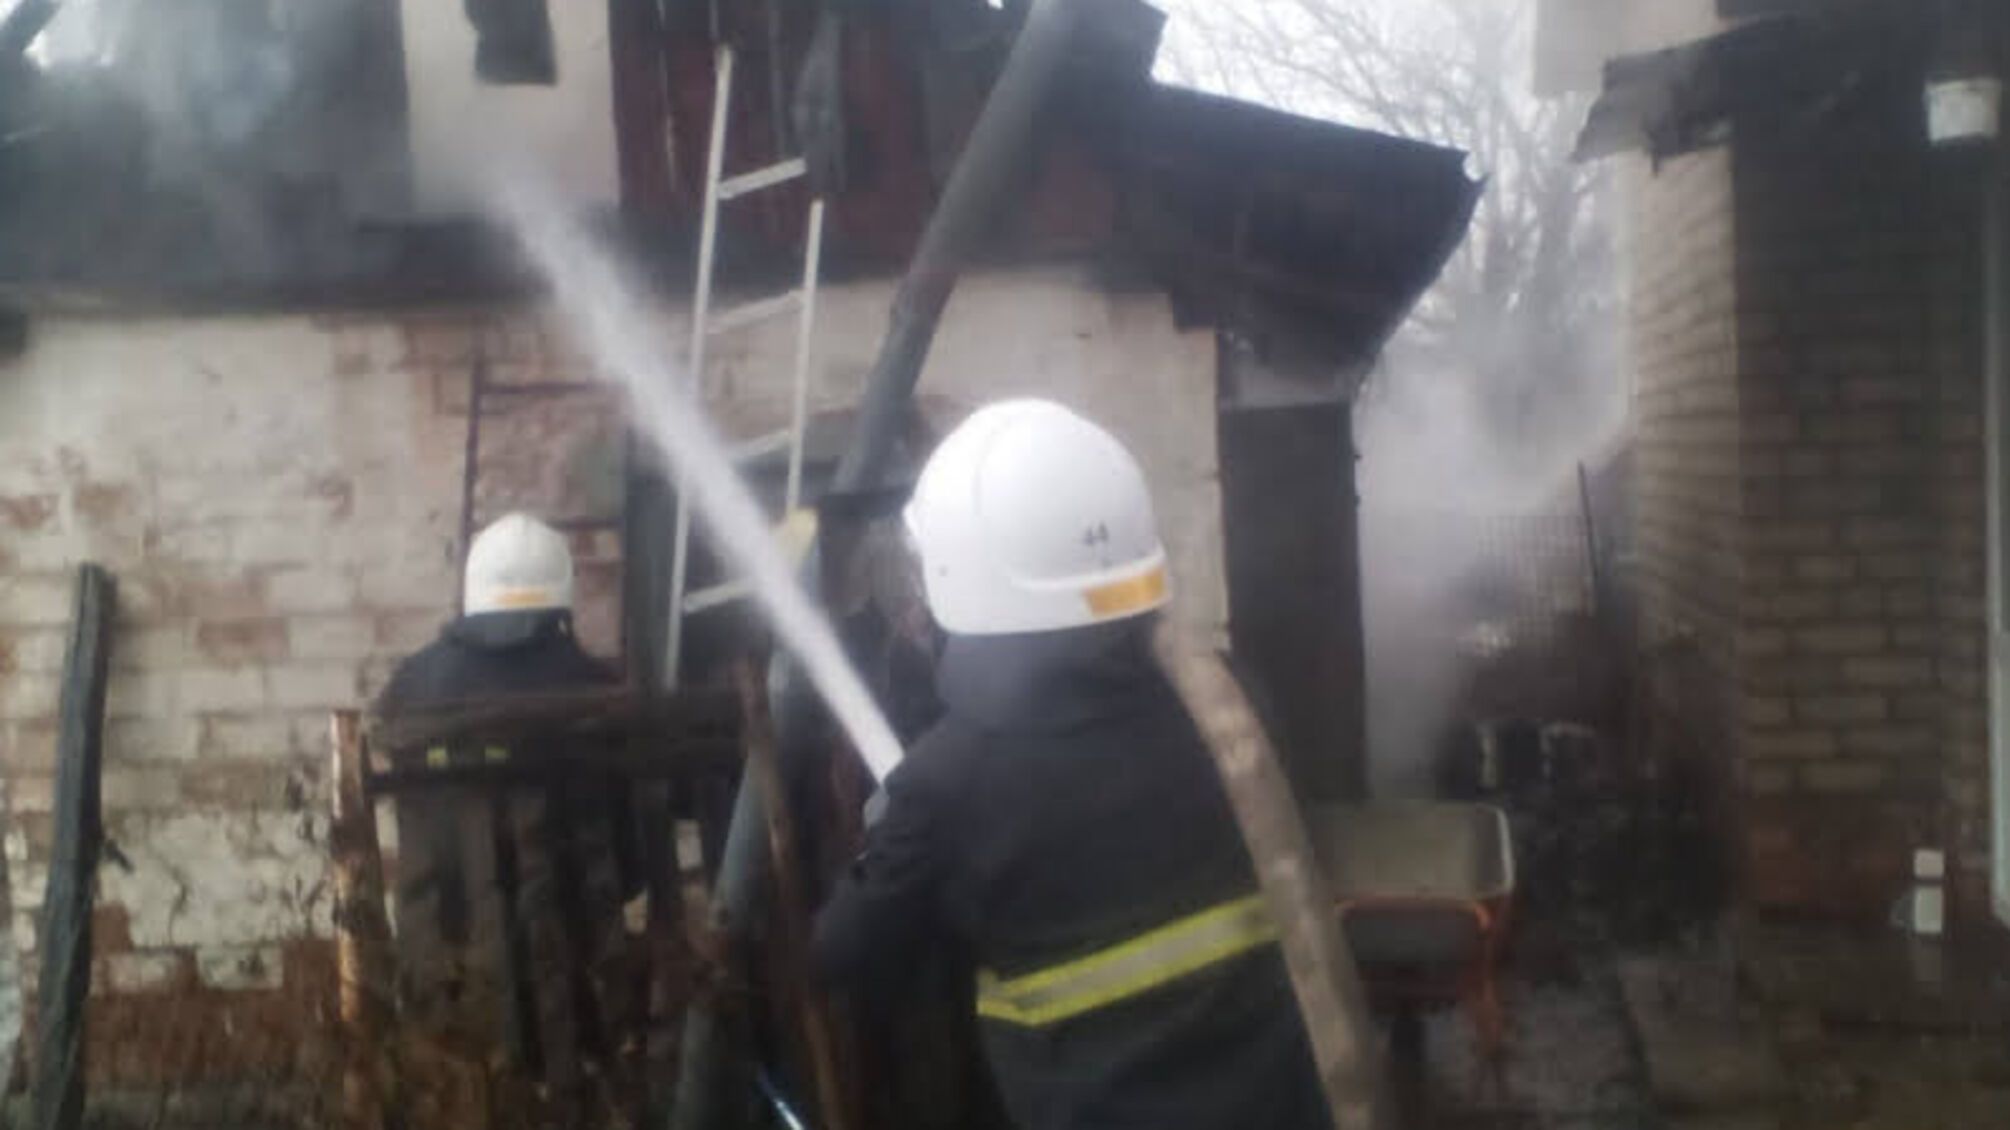 Харківська область: на території приватного домоволодіння трапилась пожежа через неправильну експлуатацію печі